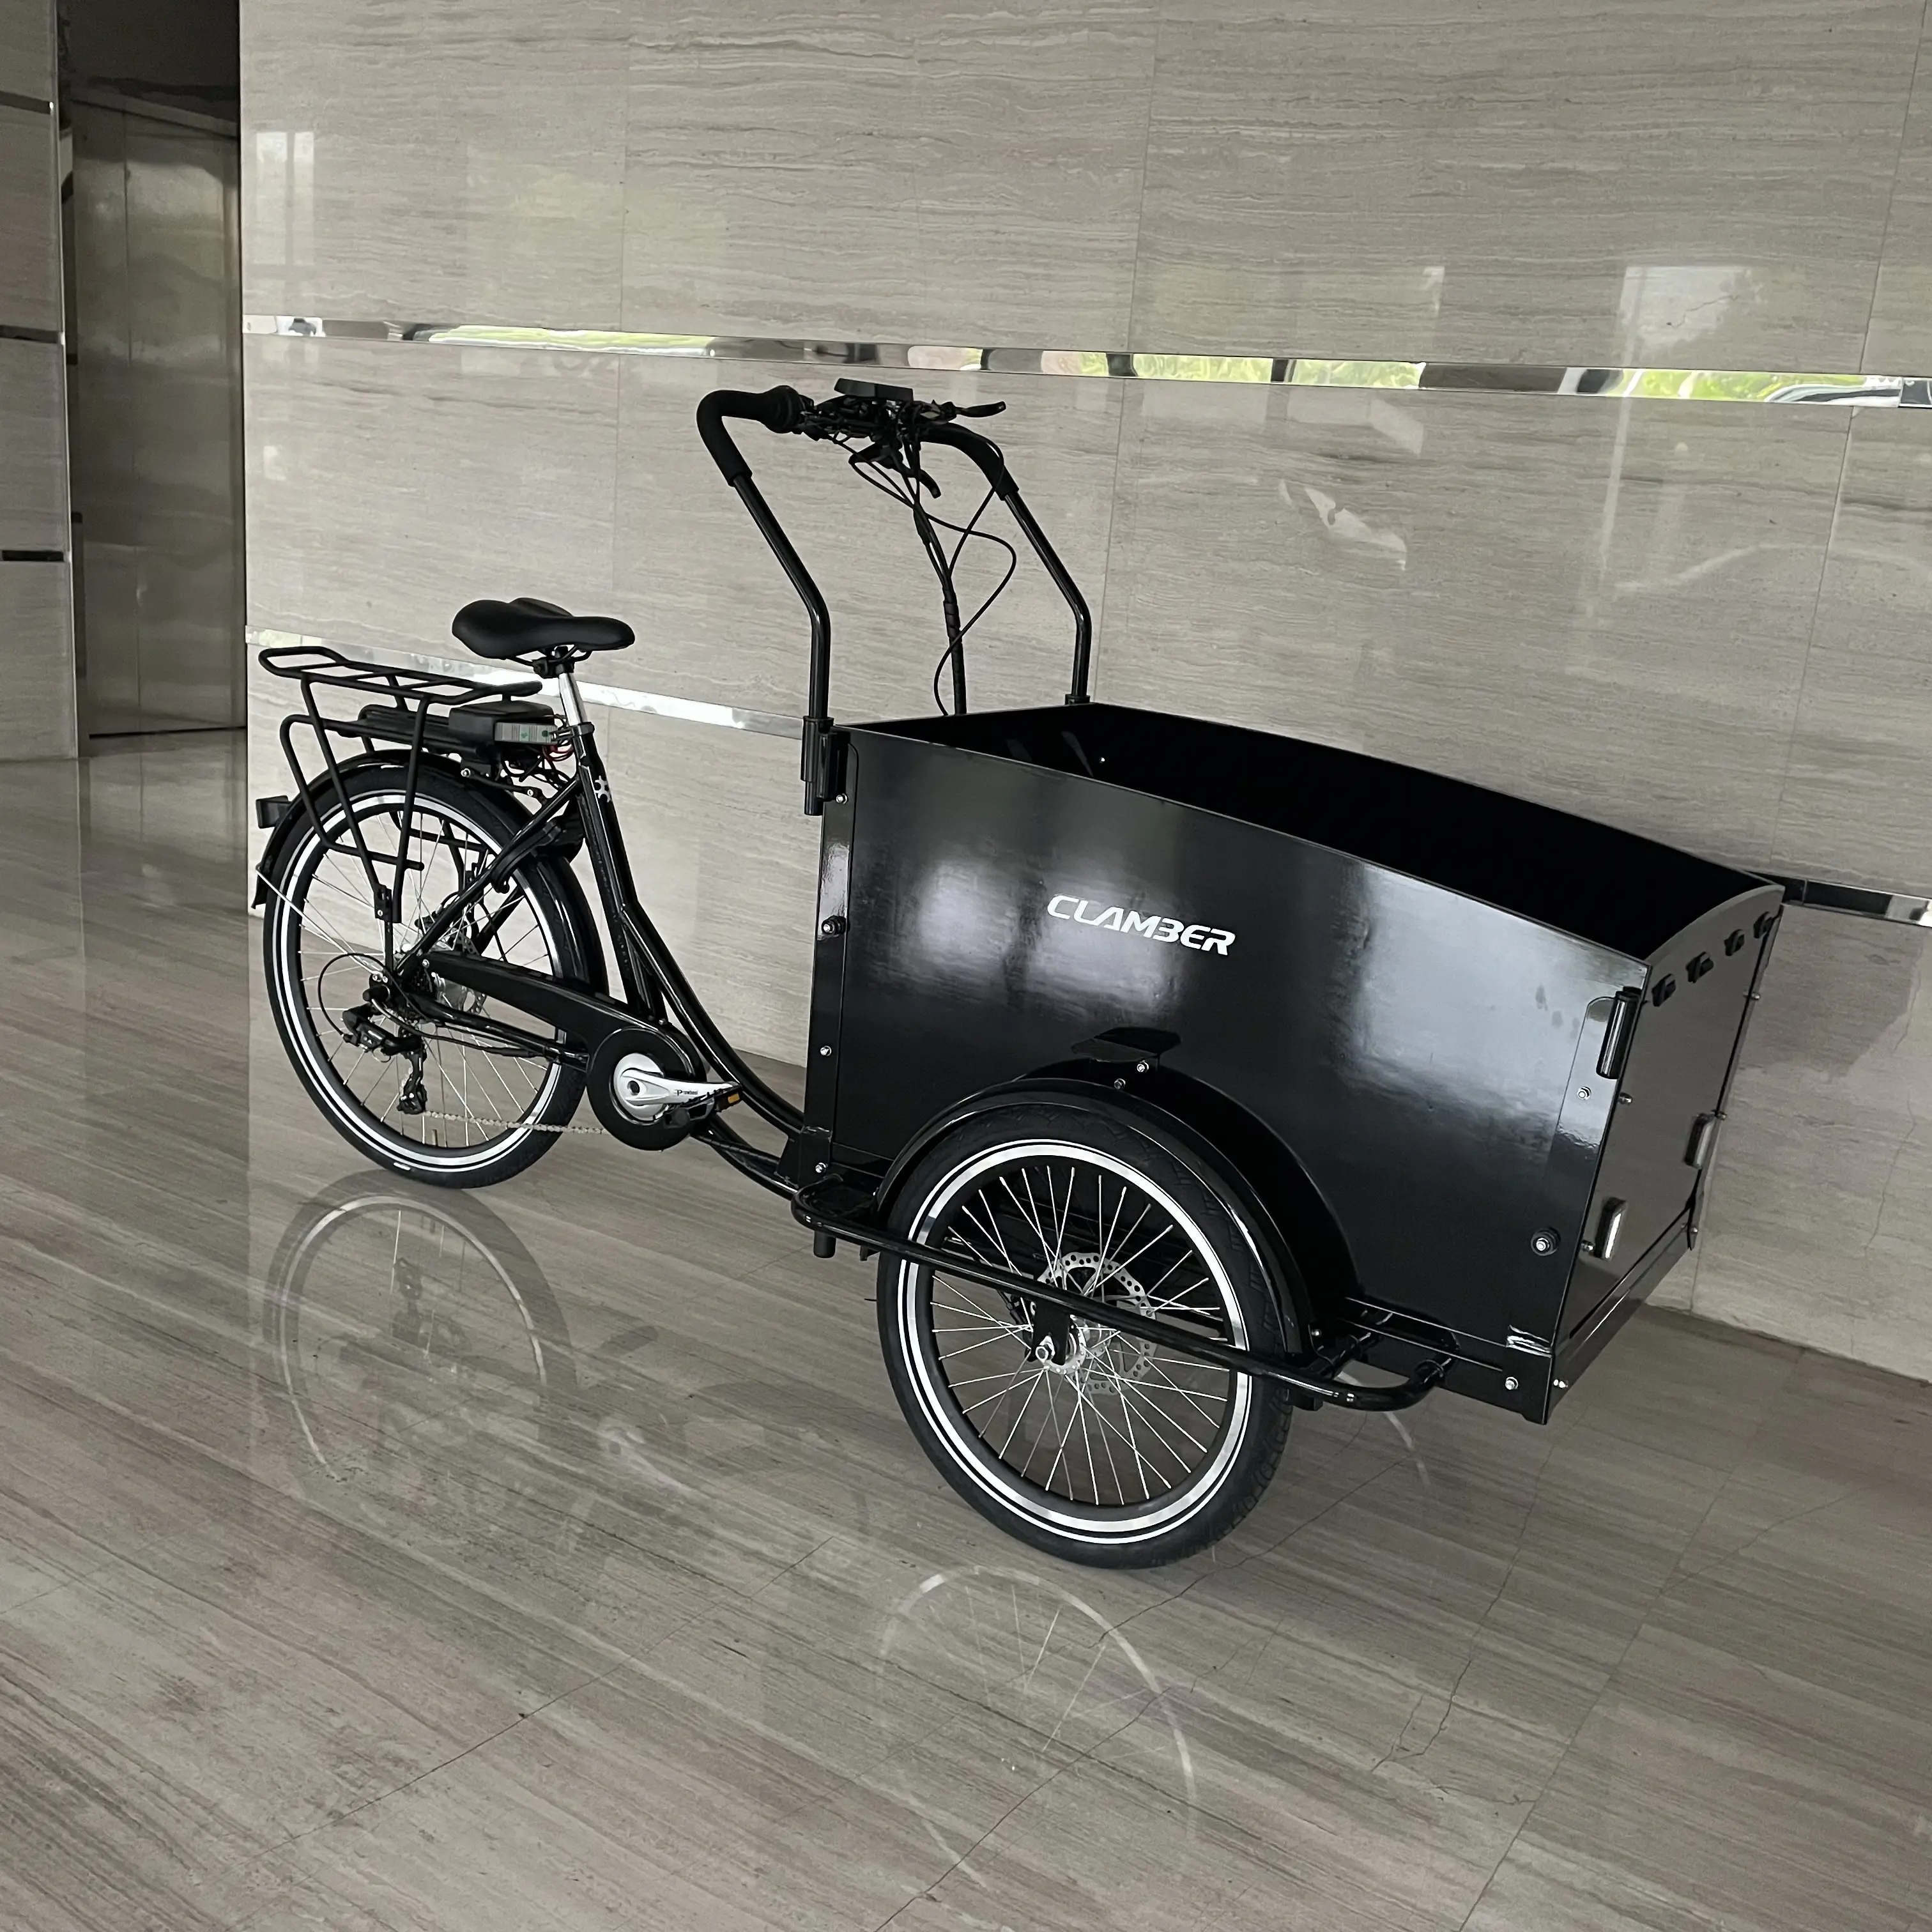 Europa magazzino elettrico 3 ruote cargo bike bicicletta mozzo posteriore motore sistema di freno a disco idraulico assistenza al pedale